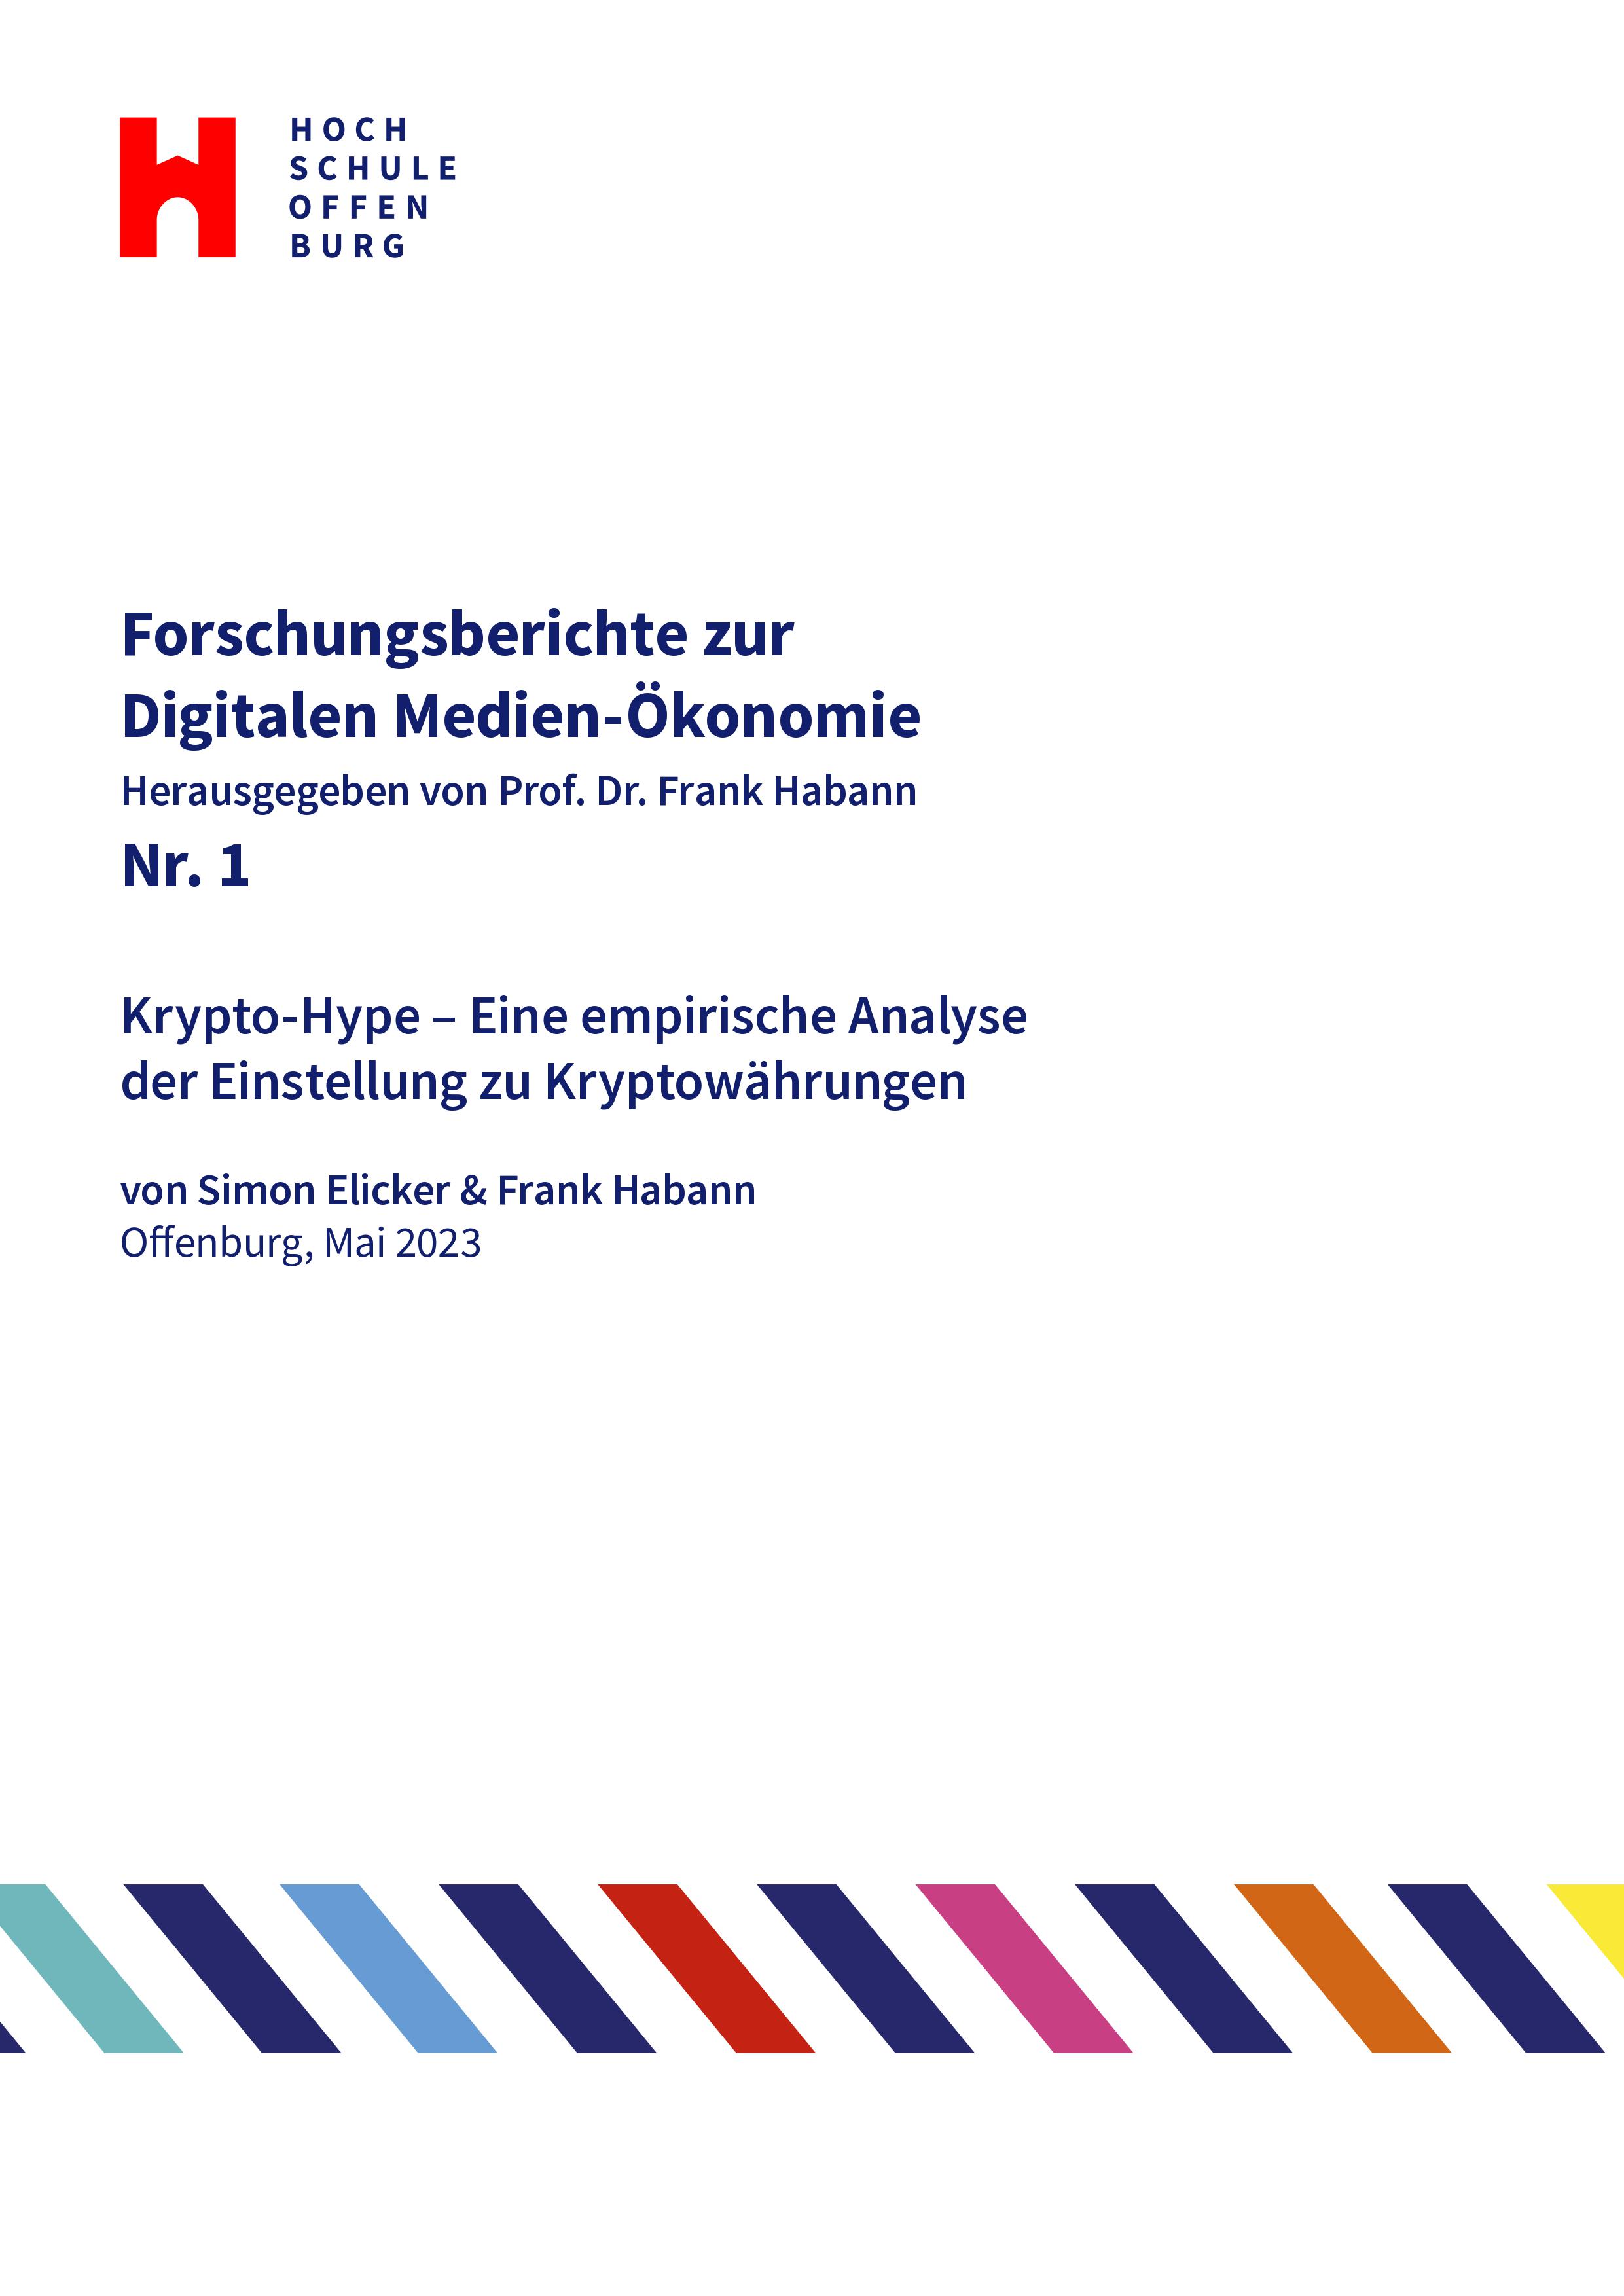 					Ansehen Nr. 1 (2023): Krypto-Hype – Eine empirische Analyse der Einstellung zu Kryptowährungen (Simon Elicker, Frank Habann)
				